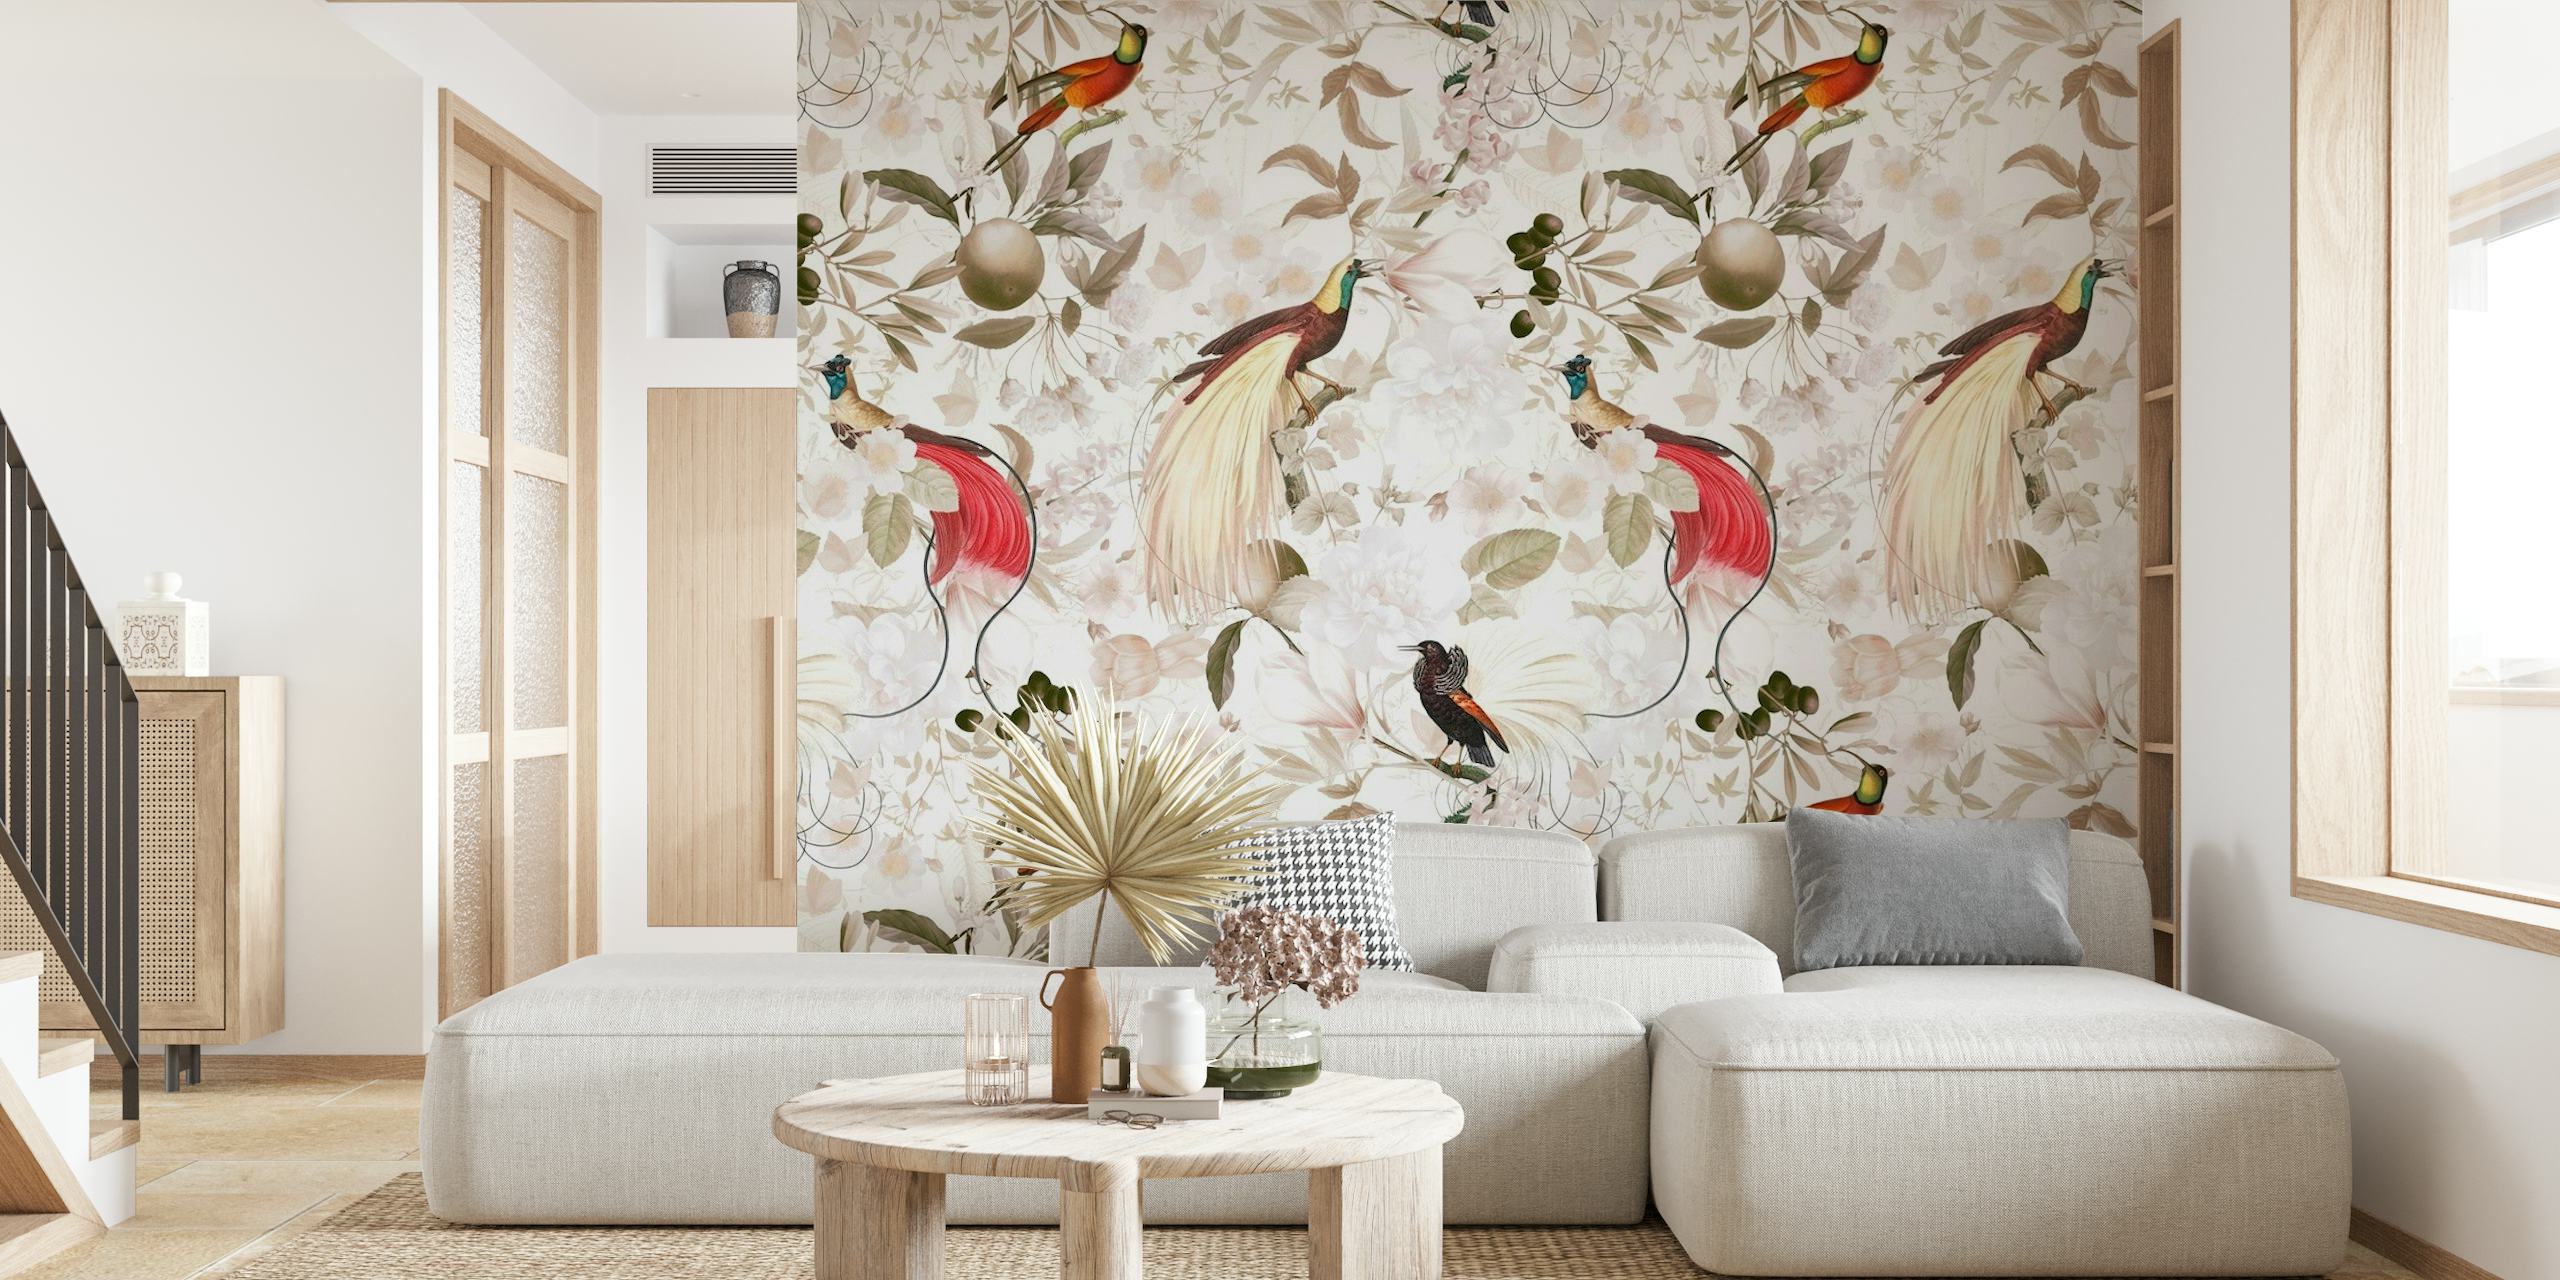 Wandbild mit bunten Paradiesvögeln in einer Vintage-Dschungelkulisse